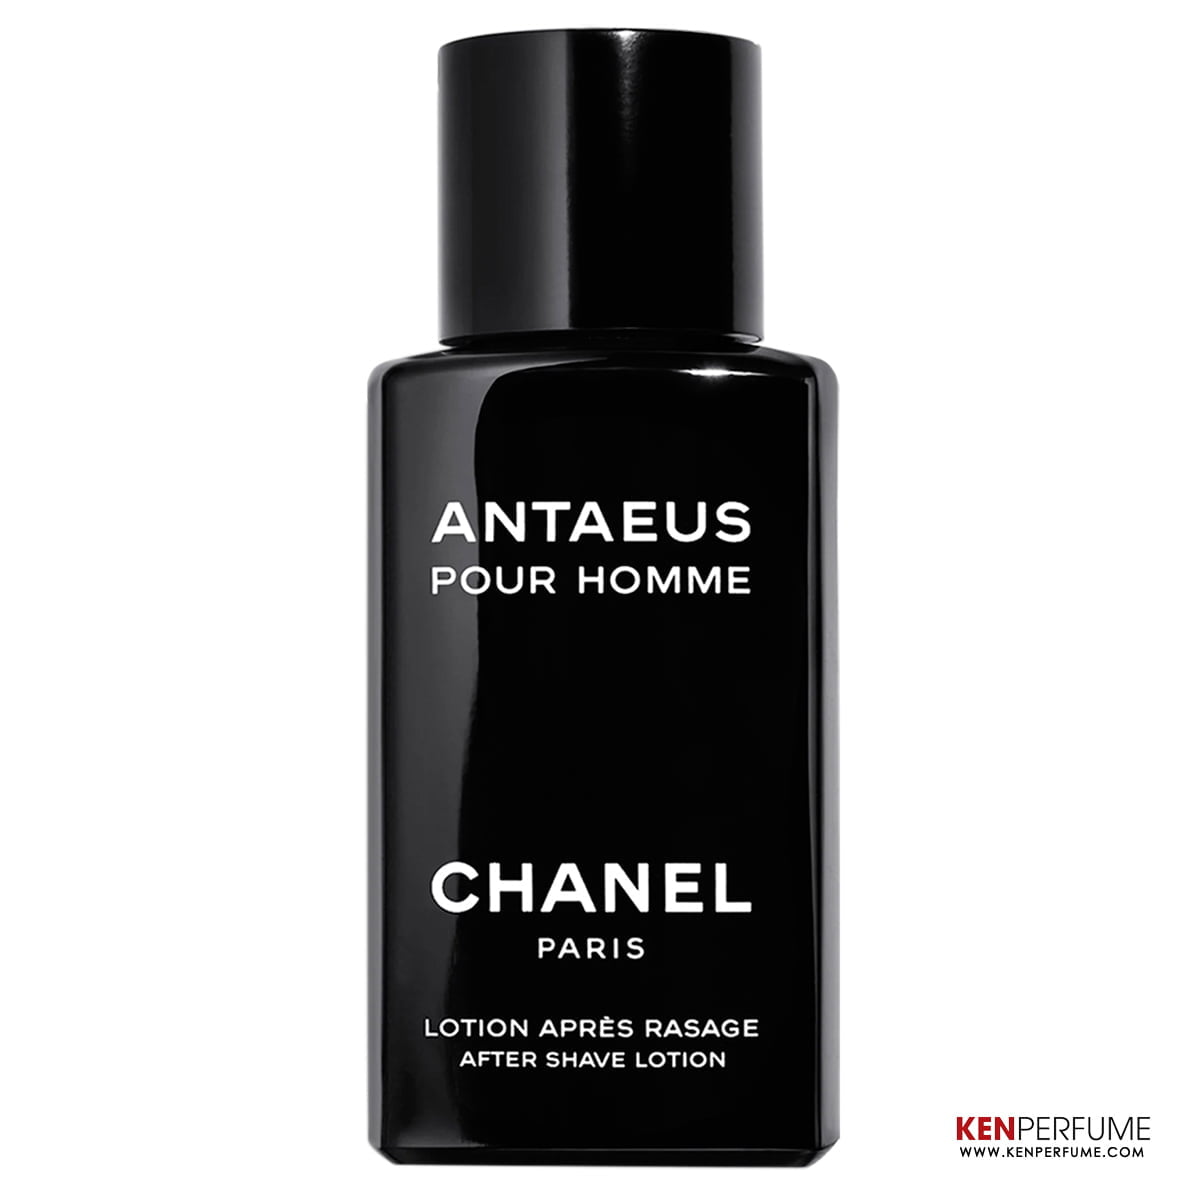 Amazoncom  Chanel Fragrance Antaeus Eau De Toilette Spray For Men  100Ml33Oz  Beauty  Personal Care